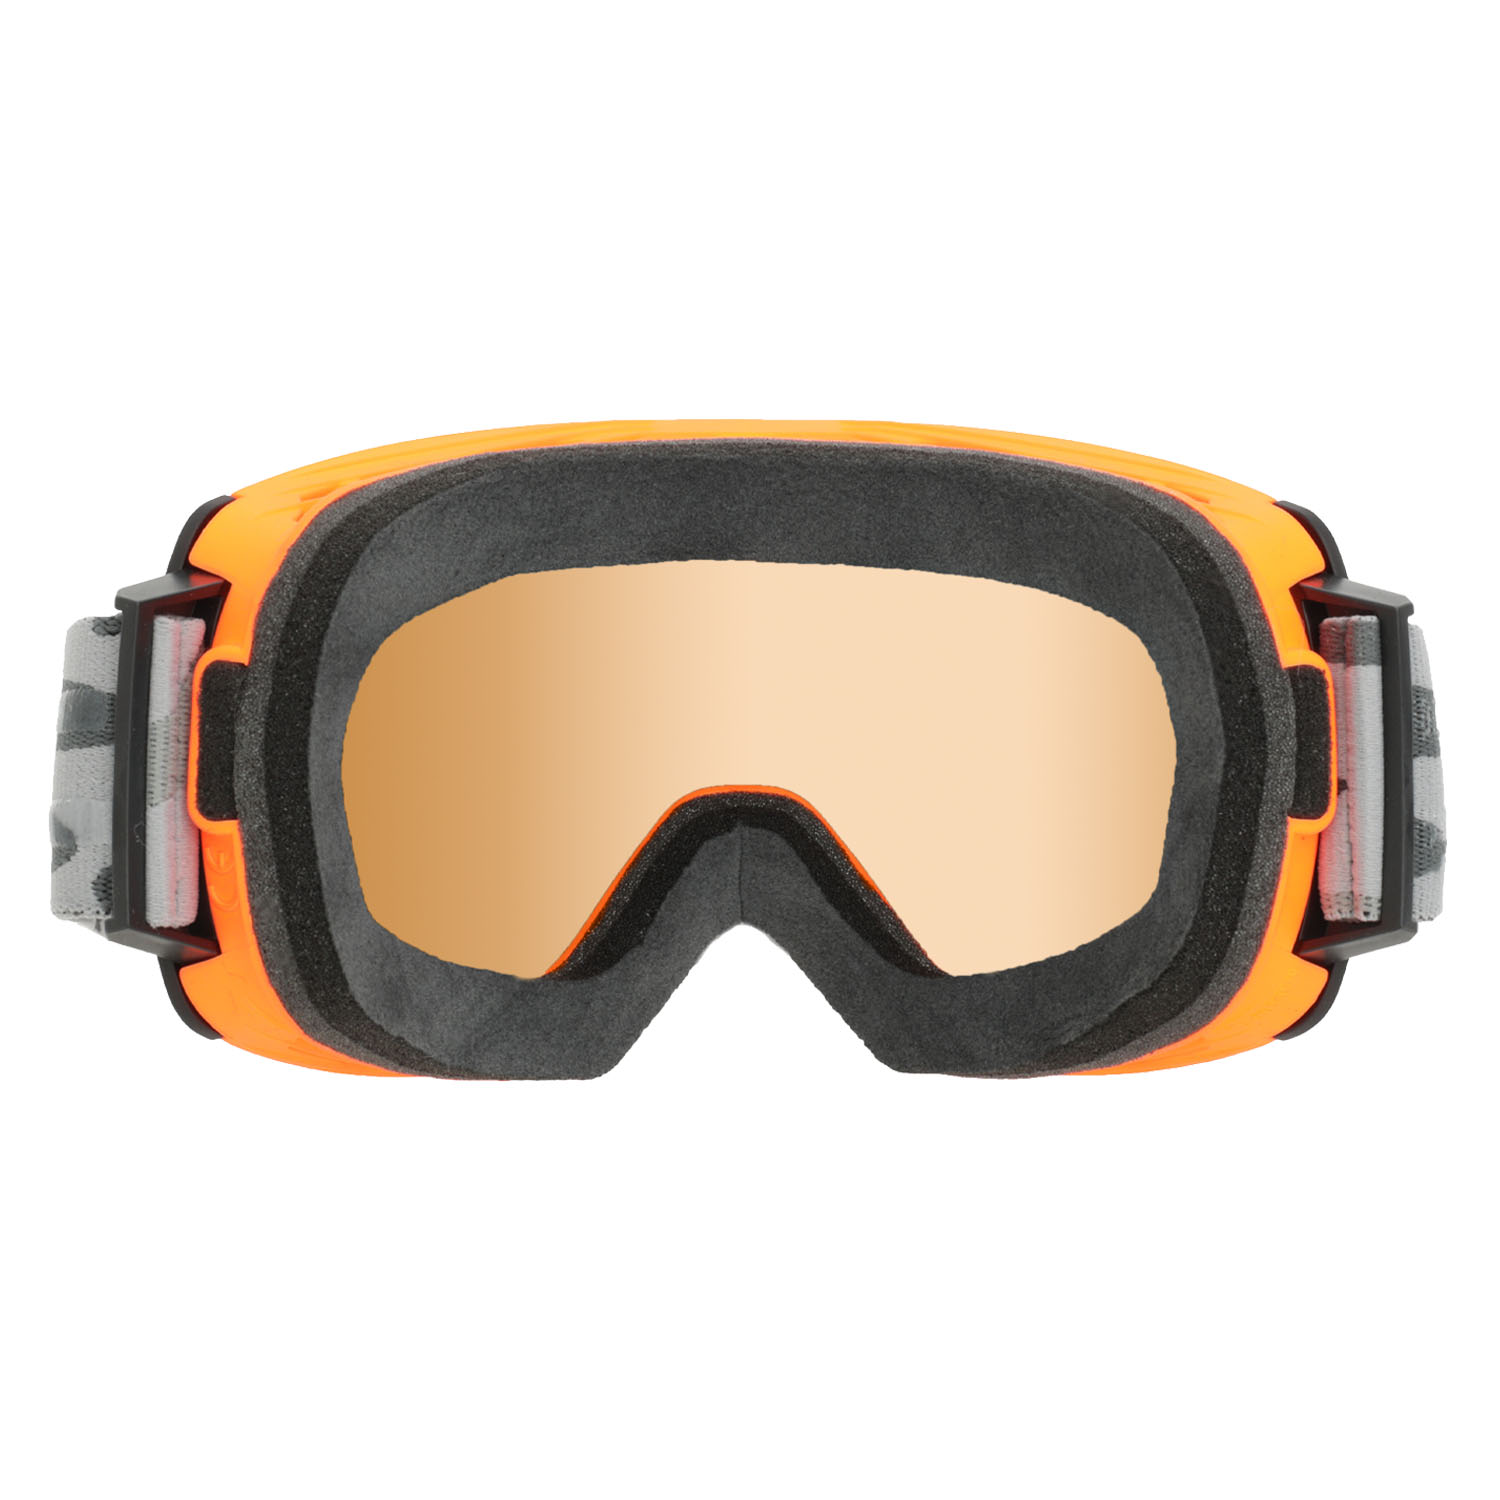 Очки горнолыжные Salice 605DARWF Orange/Rw Black S3, S2